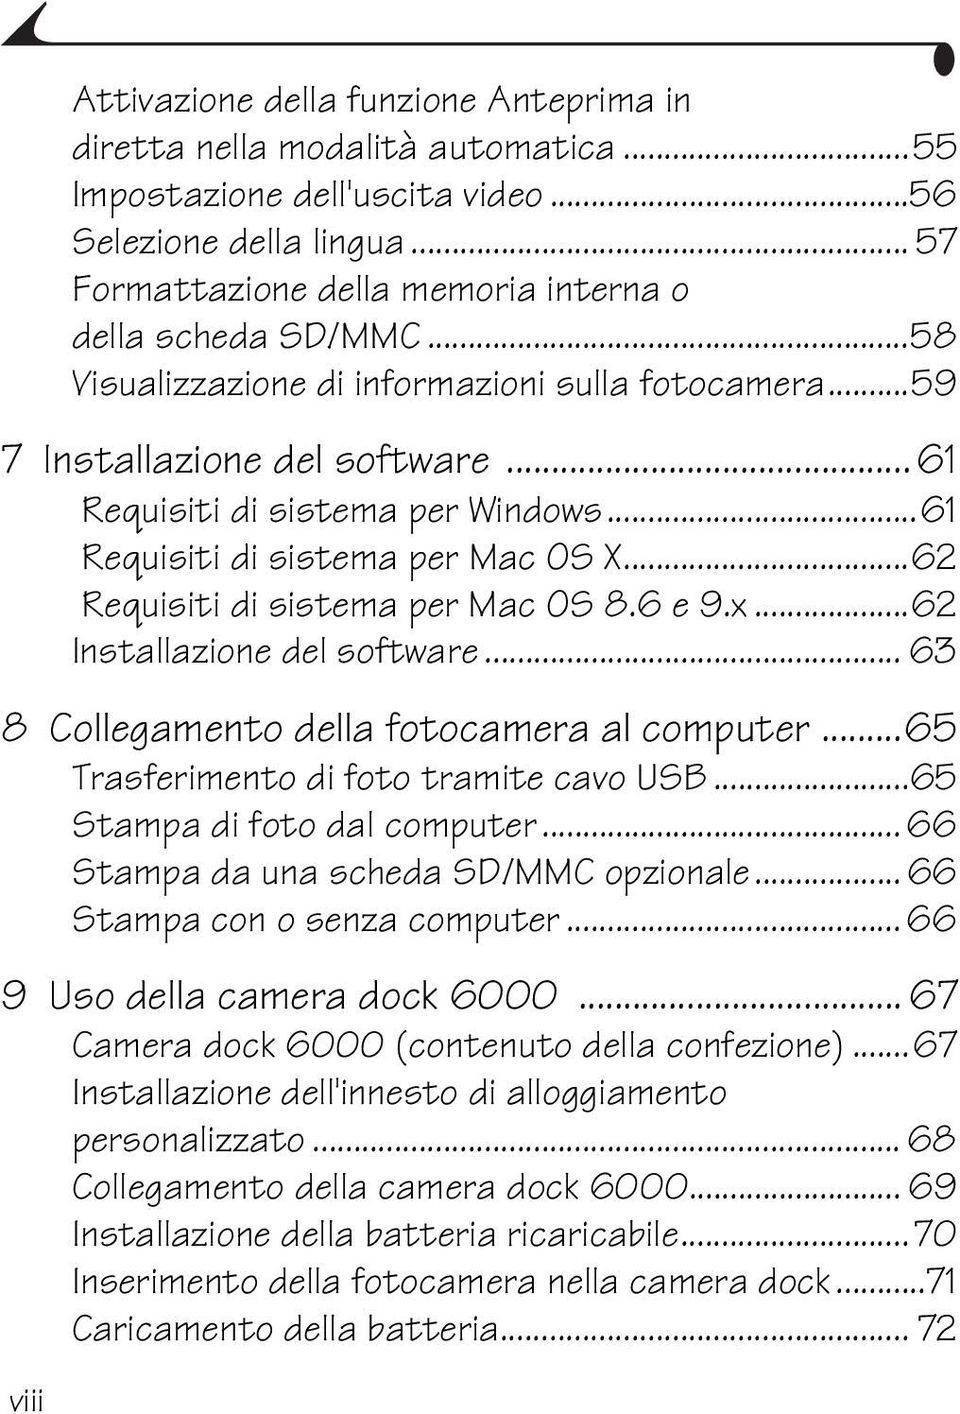 ..61 Requisiti di sistema per Mac OS X...62 Requisiti di sistema per Mac OS 8.6 e 9.x...62 Installazione del software... 63 8 Collegamento della fotocamera al computer.